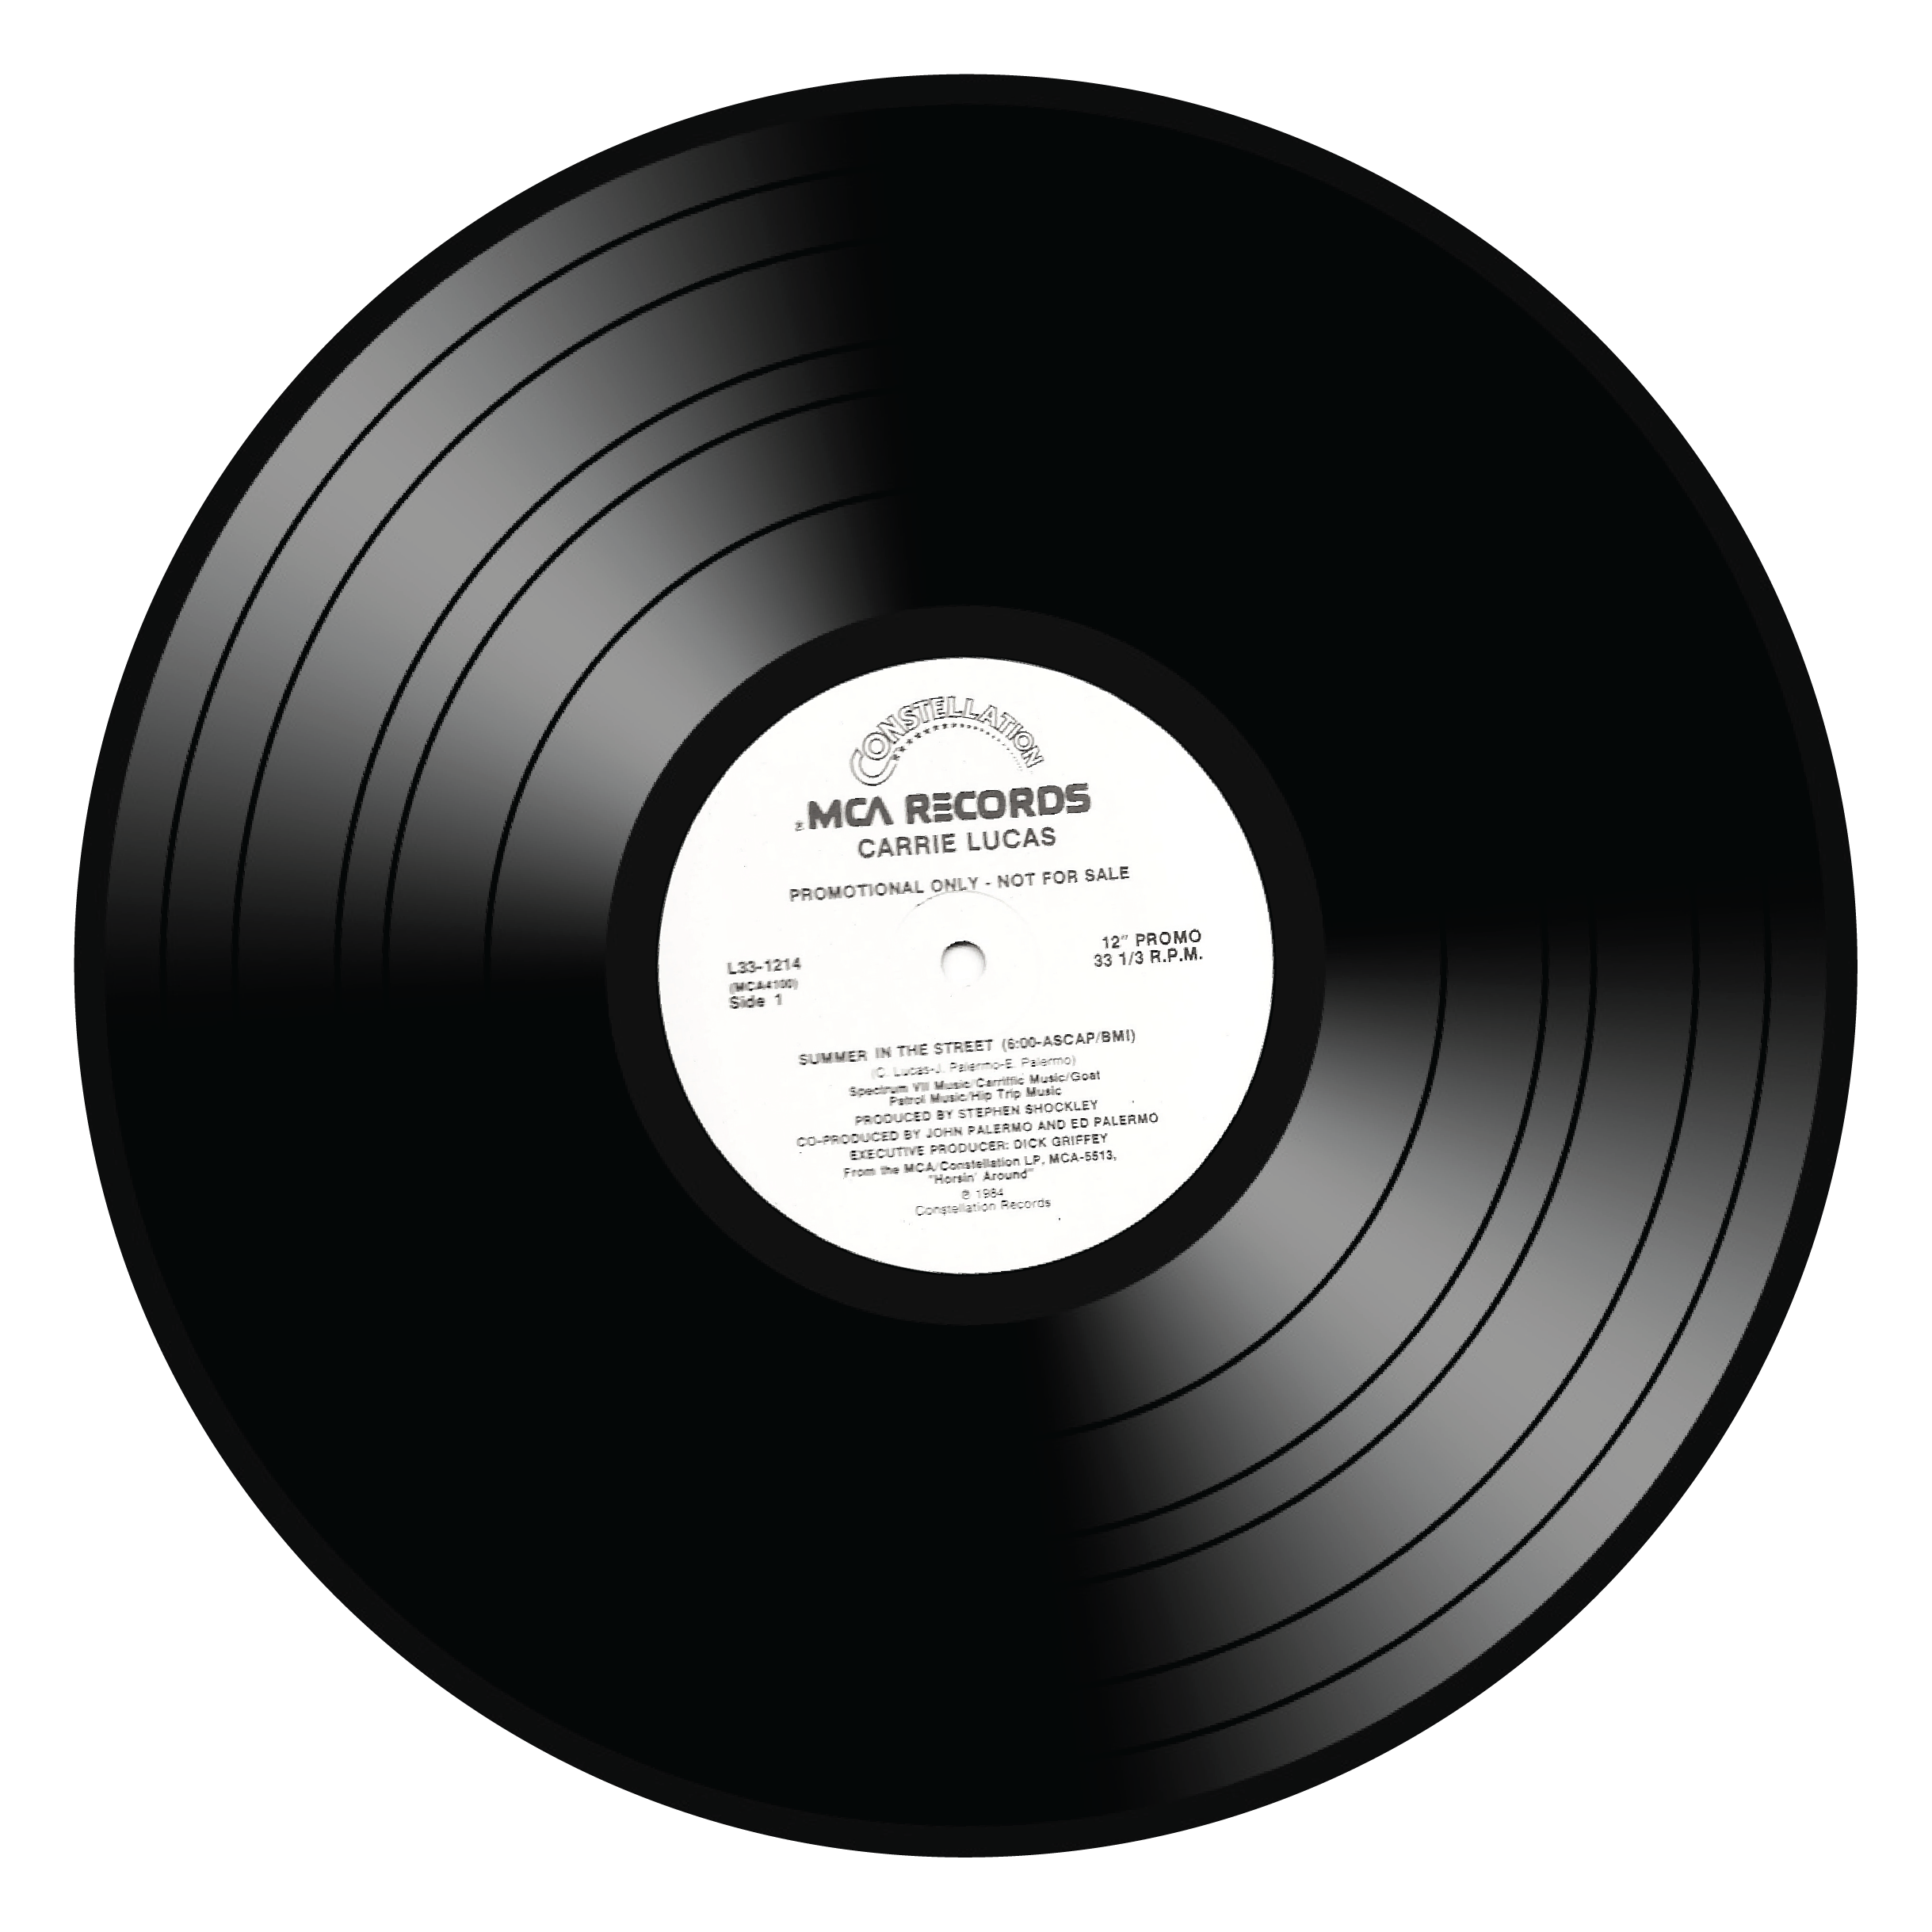 Vinyl Record 1 1024 768 Desci